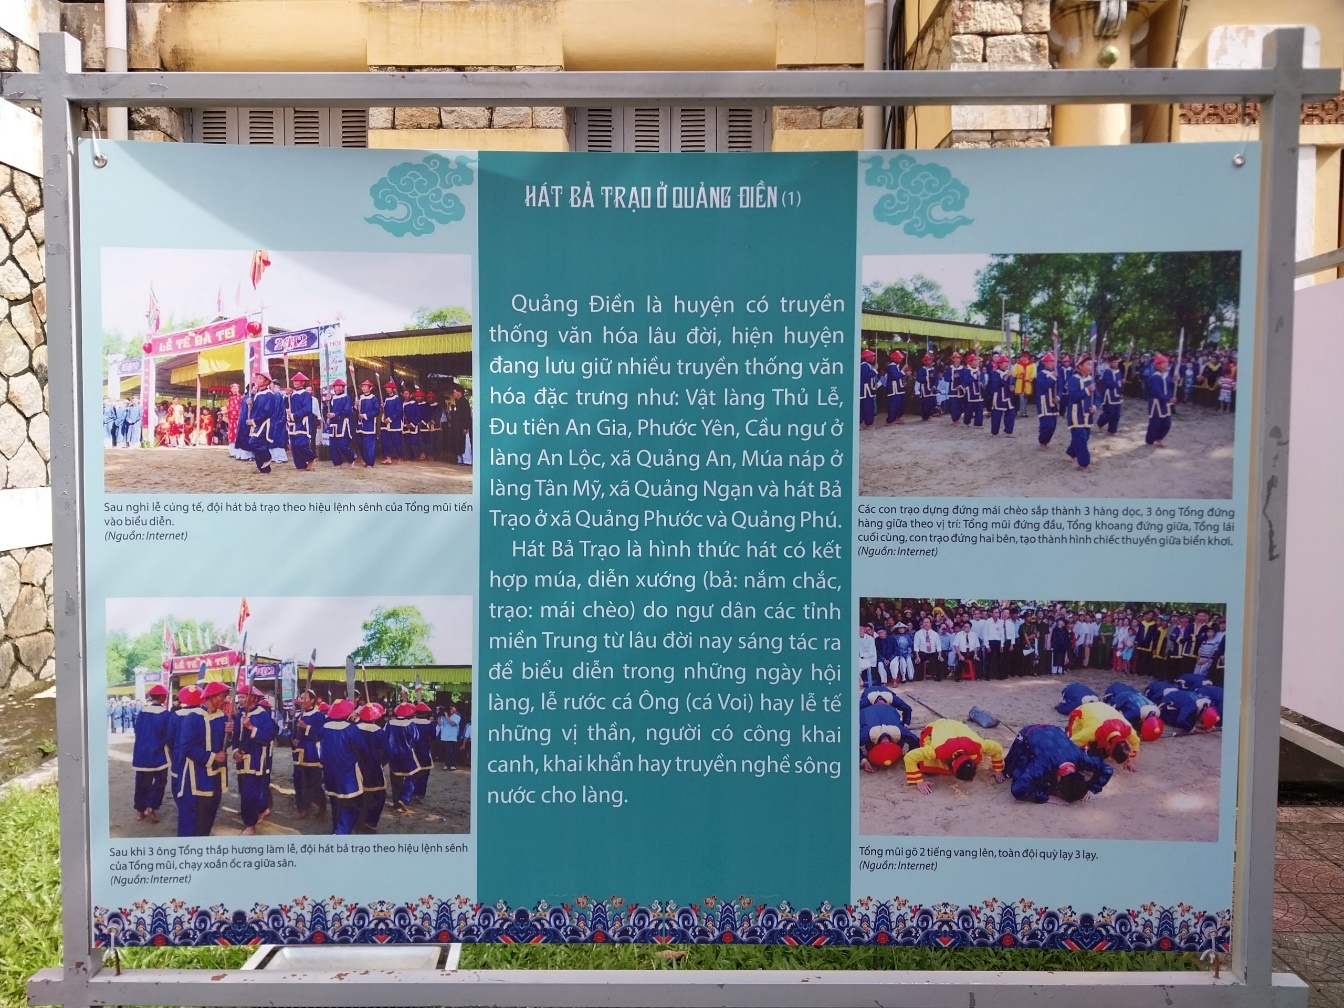 Xem một số lễ hội dân gian ở Thừa Thiên Huế - 5